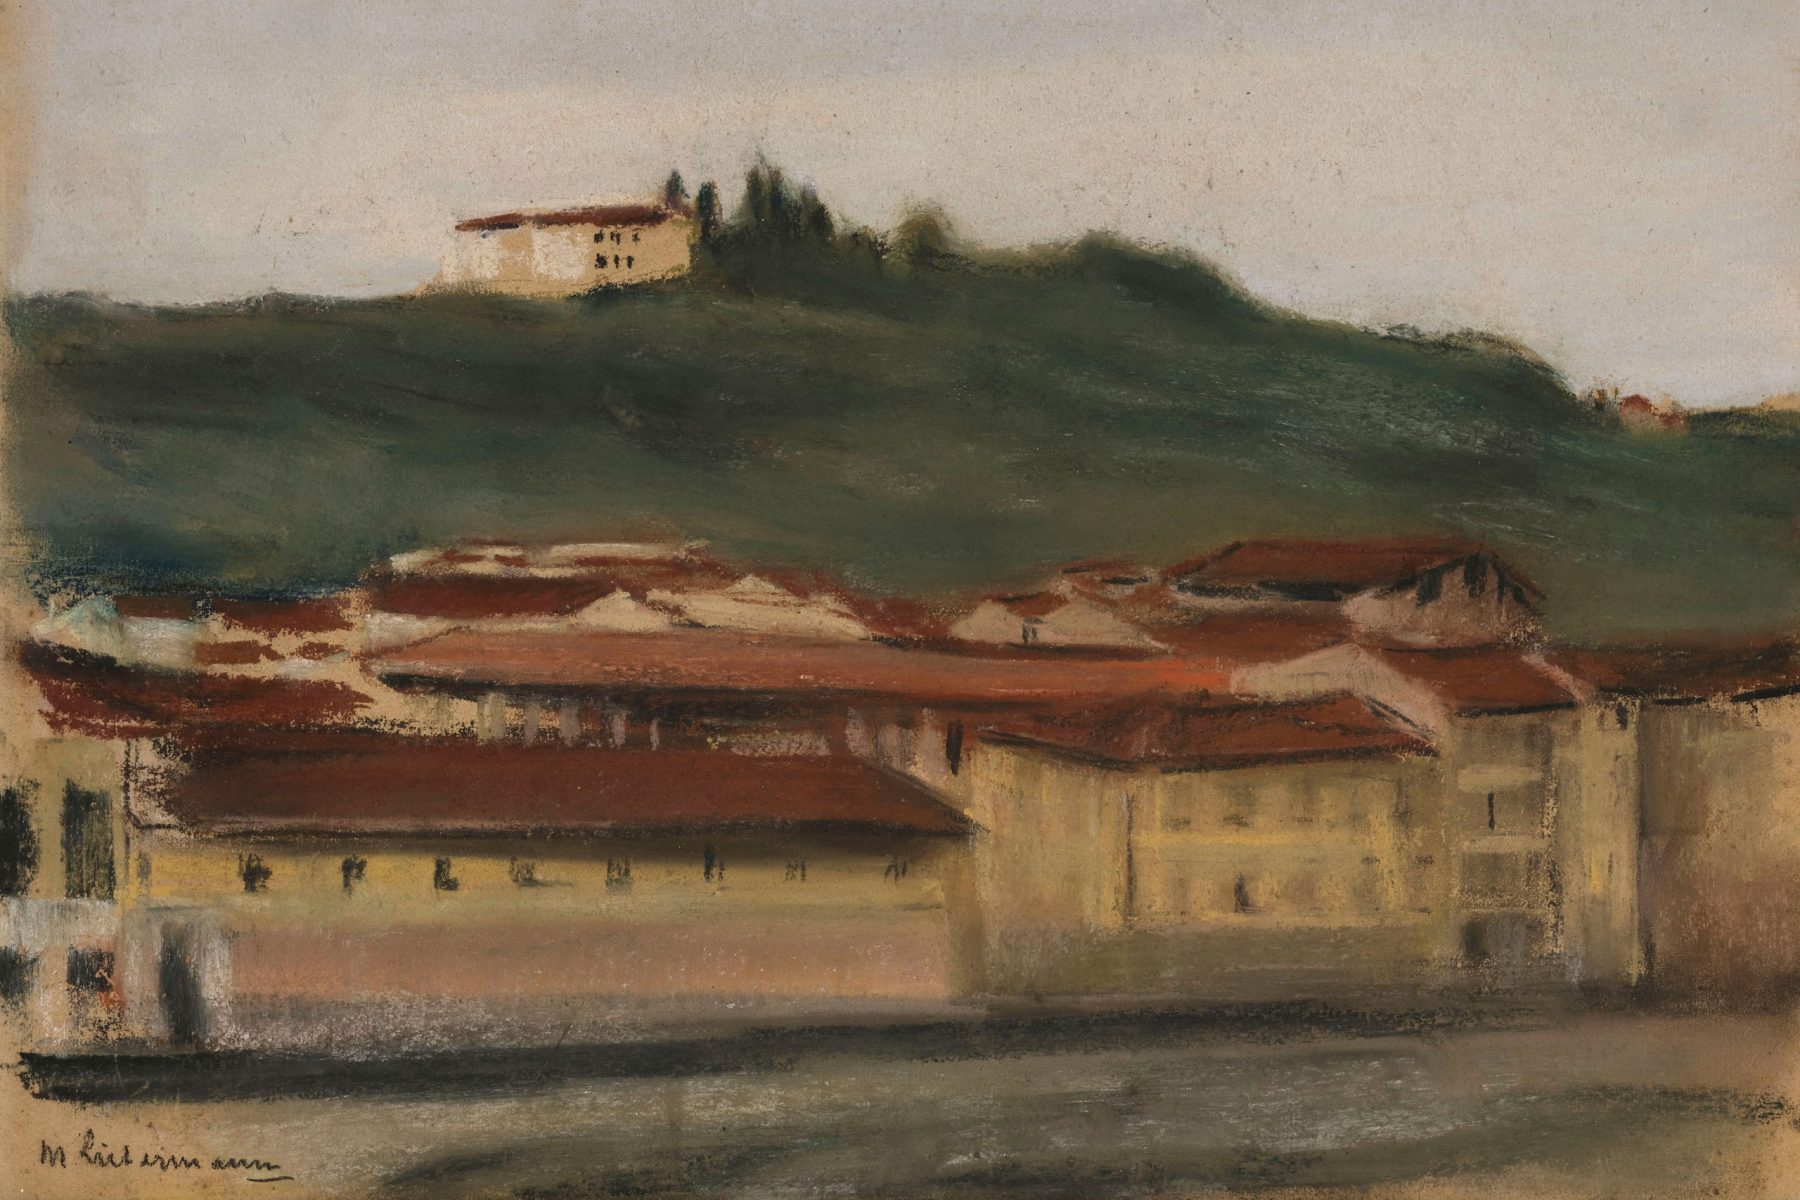 Pastellzeichnung einer Landschaft mit flachen Häusern im Vordergrund, einem grünen Hügel im Hintergrund und ein helles Haus auf dem Hügel